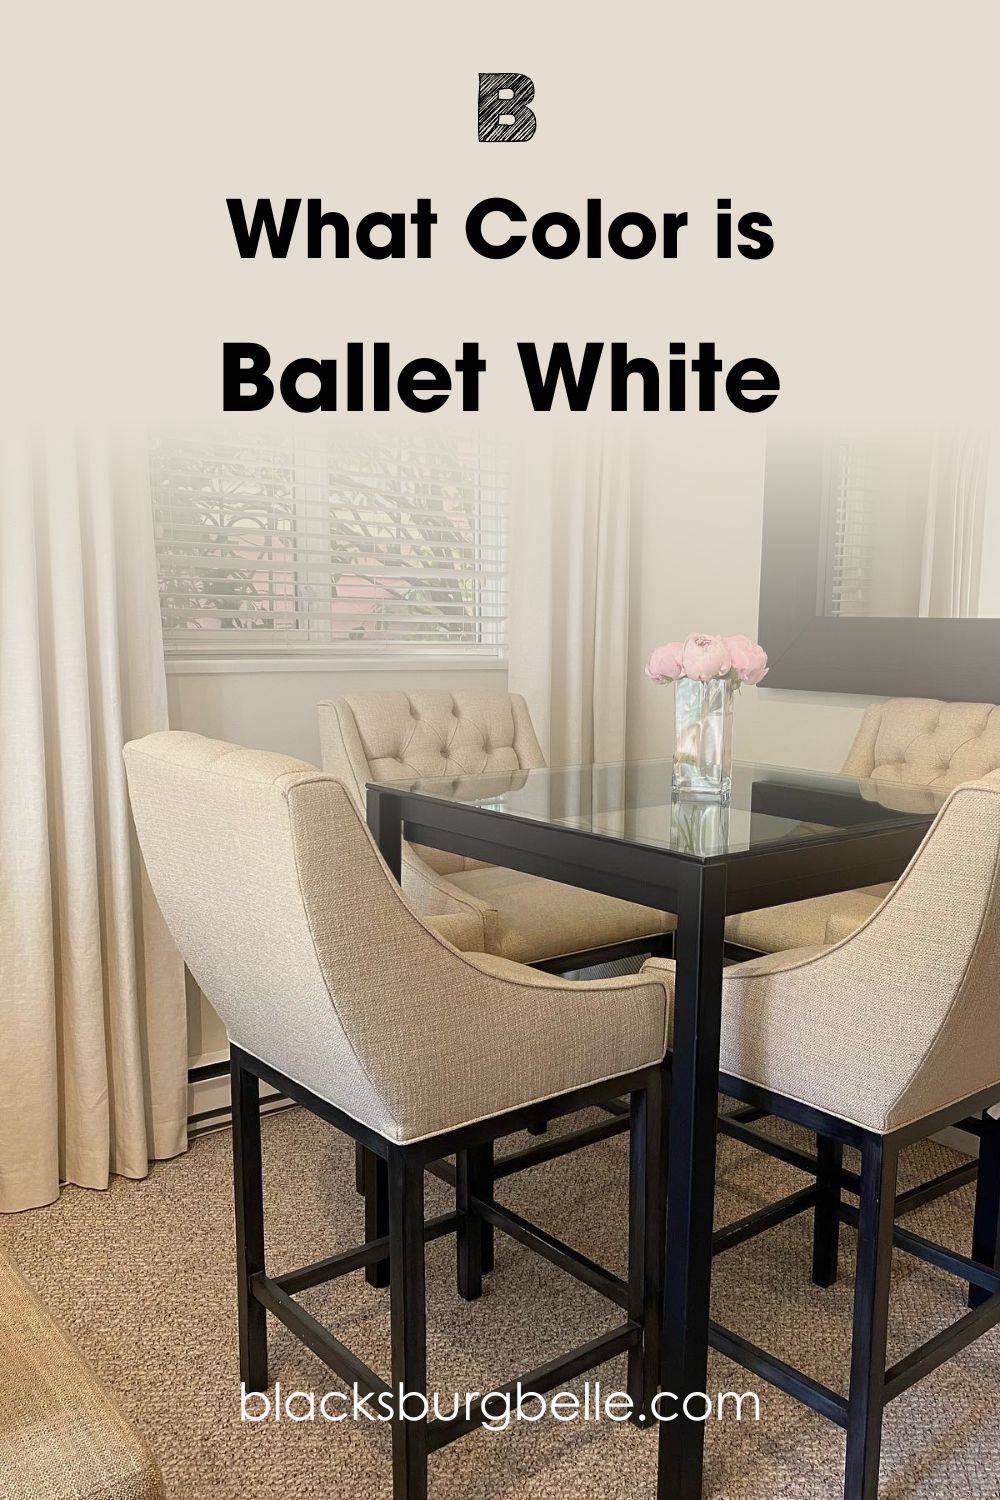 Ballet White